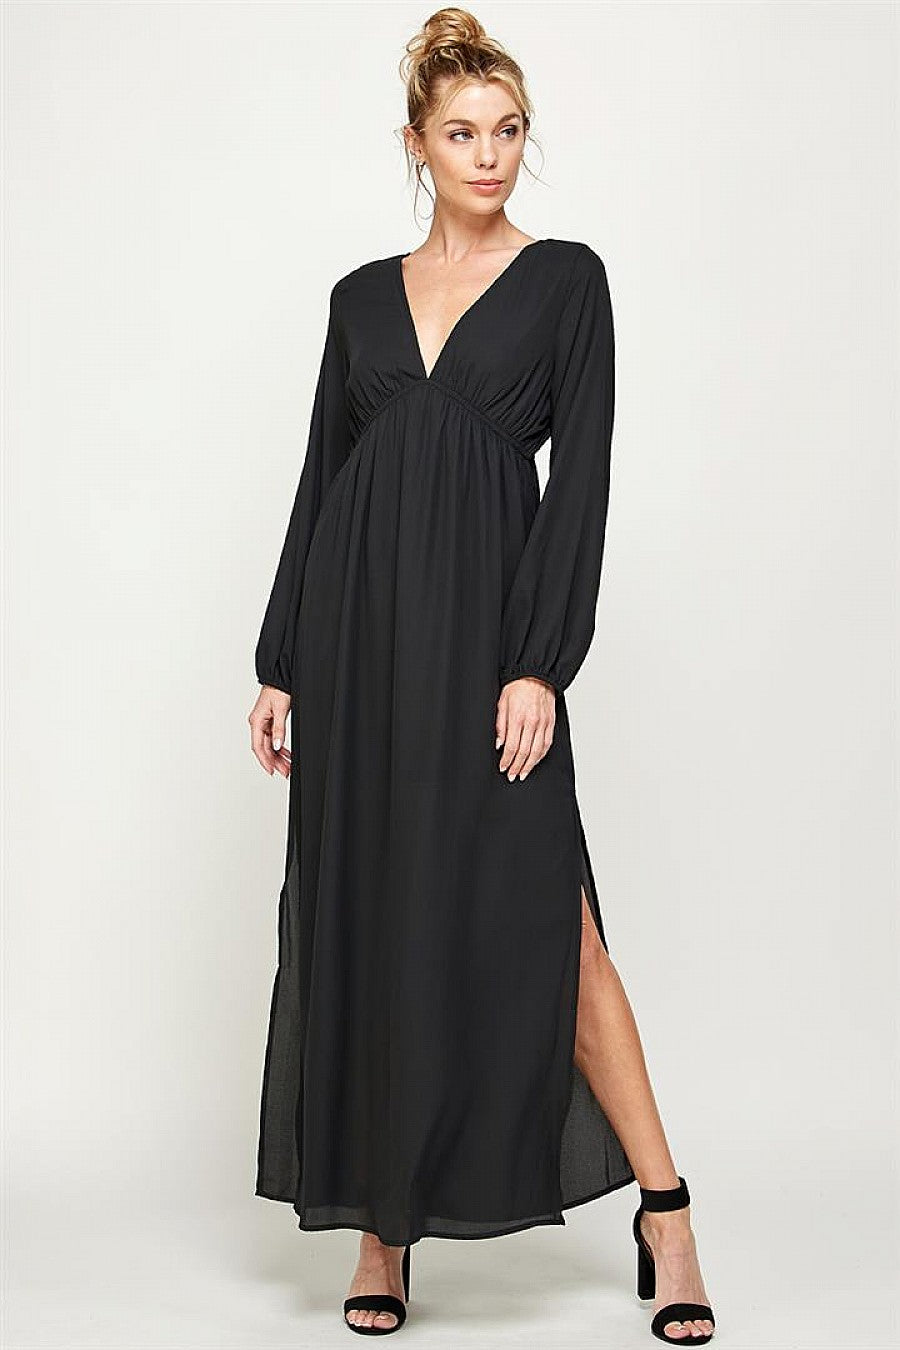 Formal Dresses Long Sleeve Side Slit Maxi Dress Black